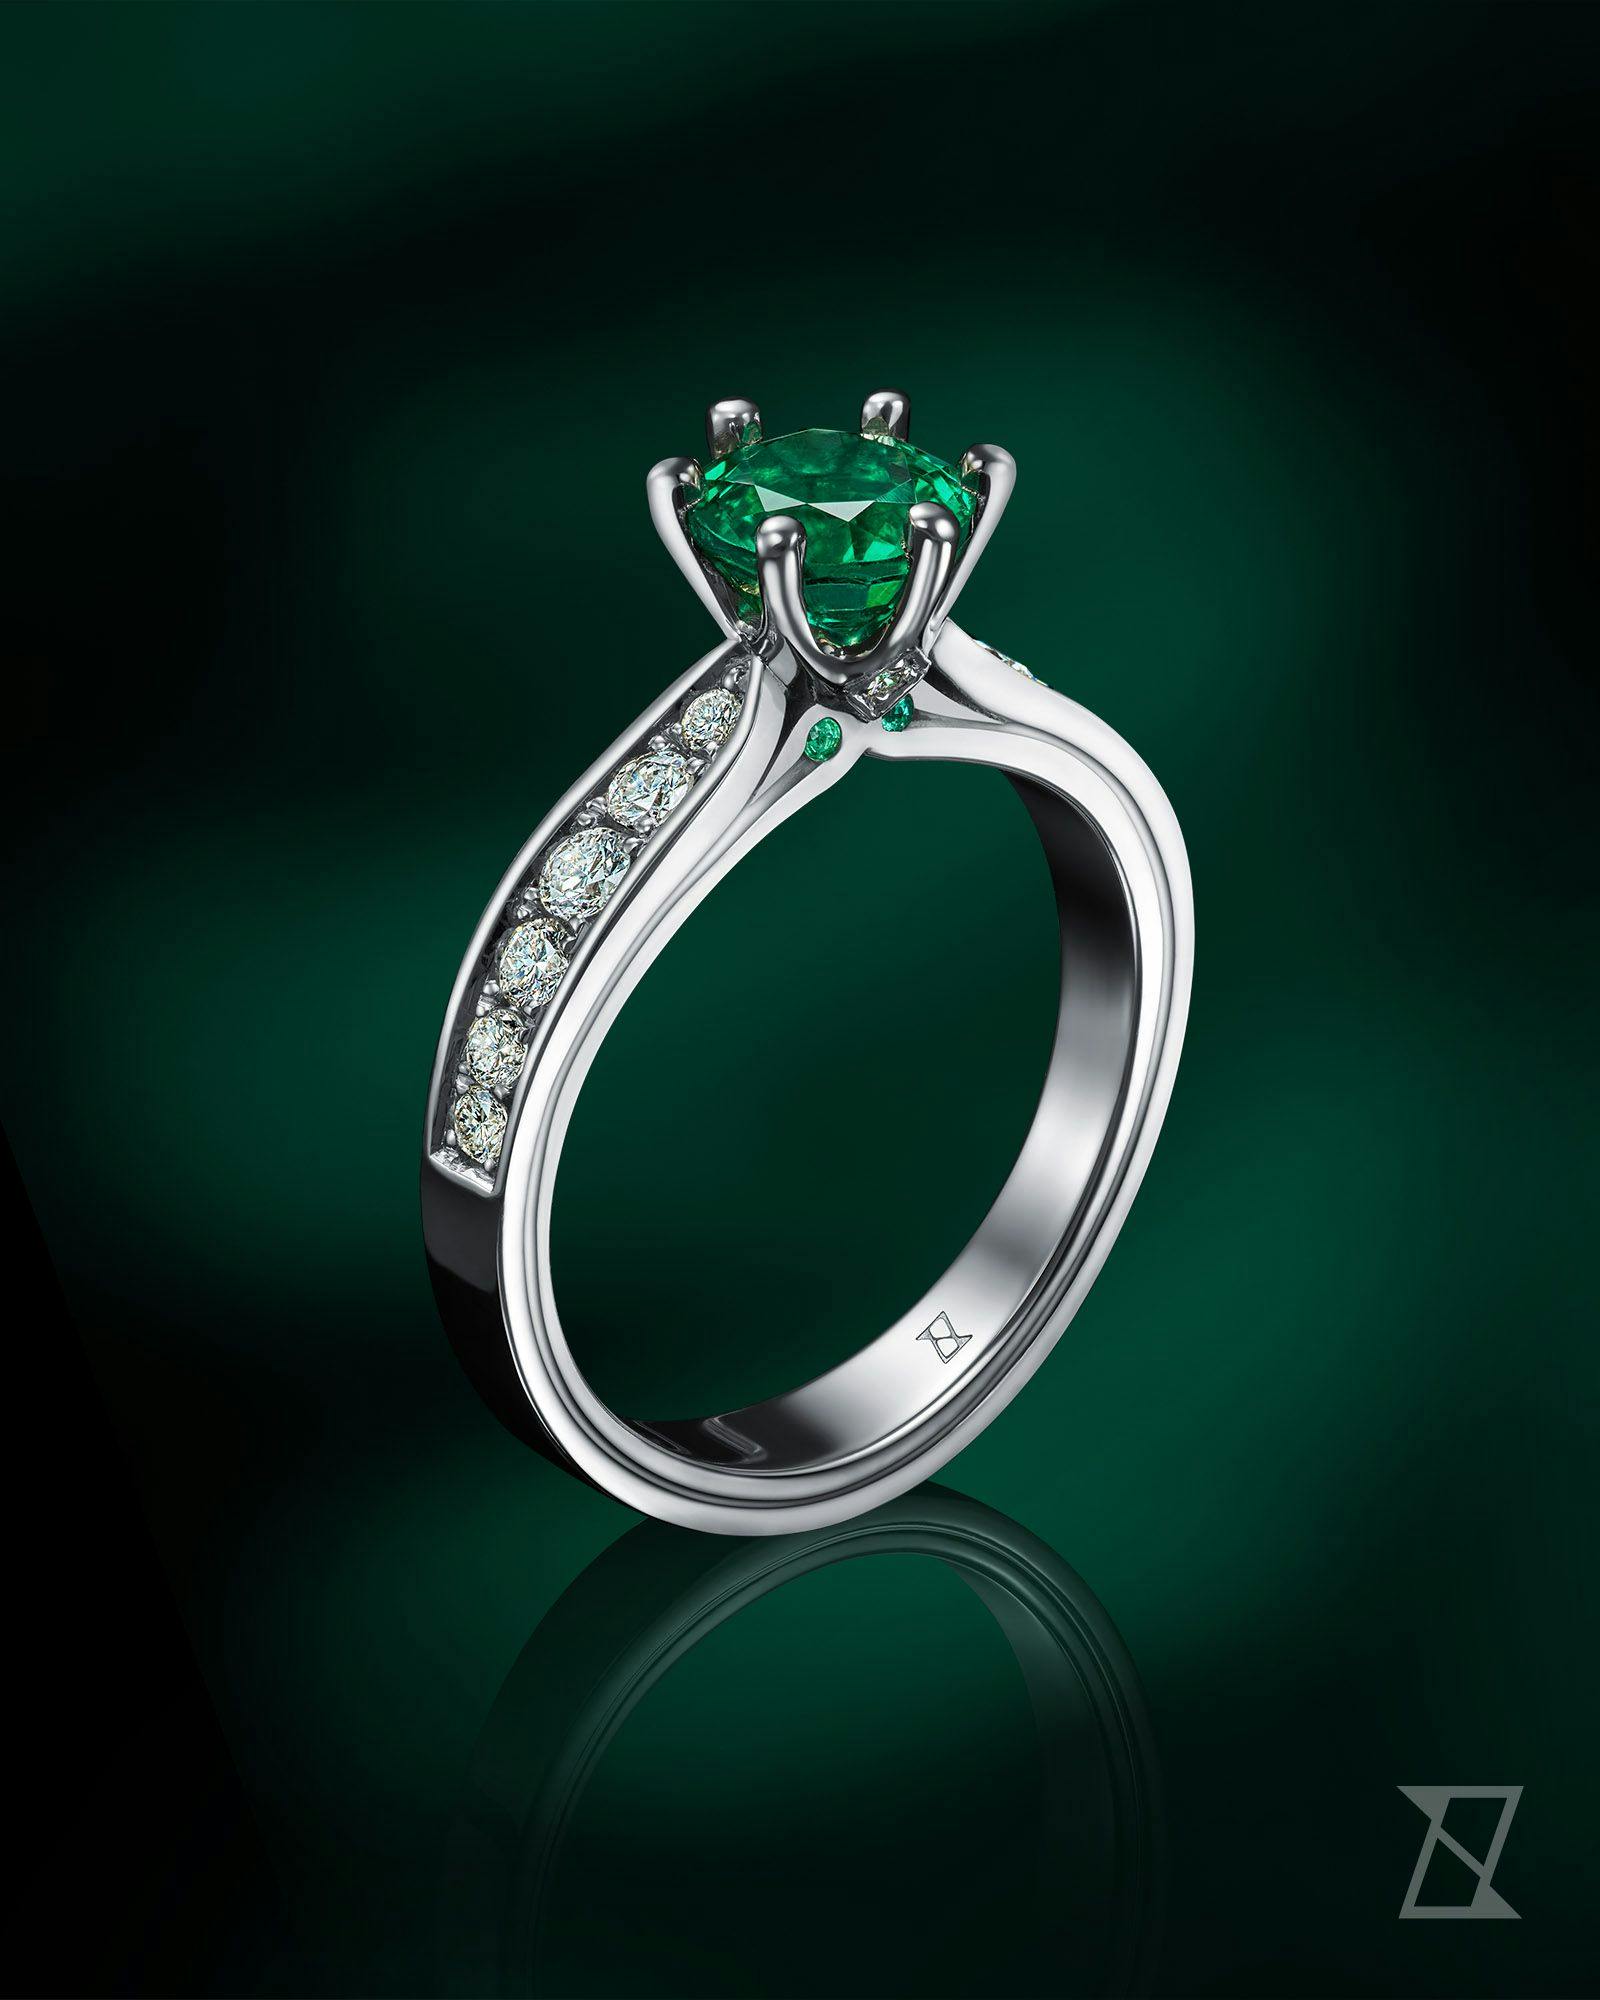 Doskonały szmaragd o najwyższej czystości dopełniony diamentami to doskonały przepis na indywidualny pierścionek zaręczynowy na zamówienie.